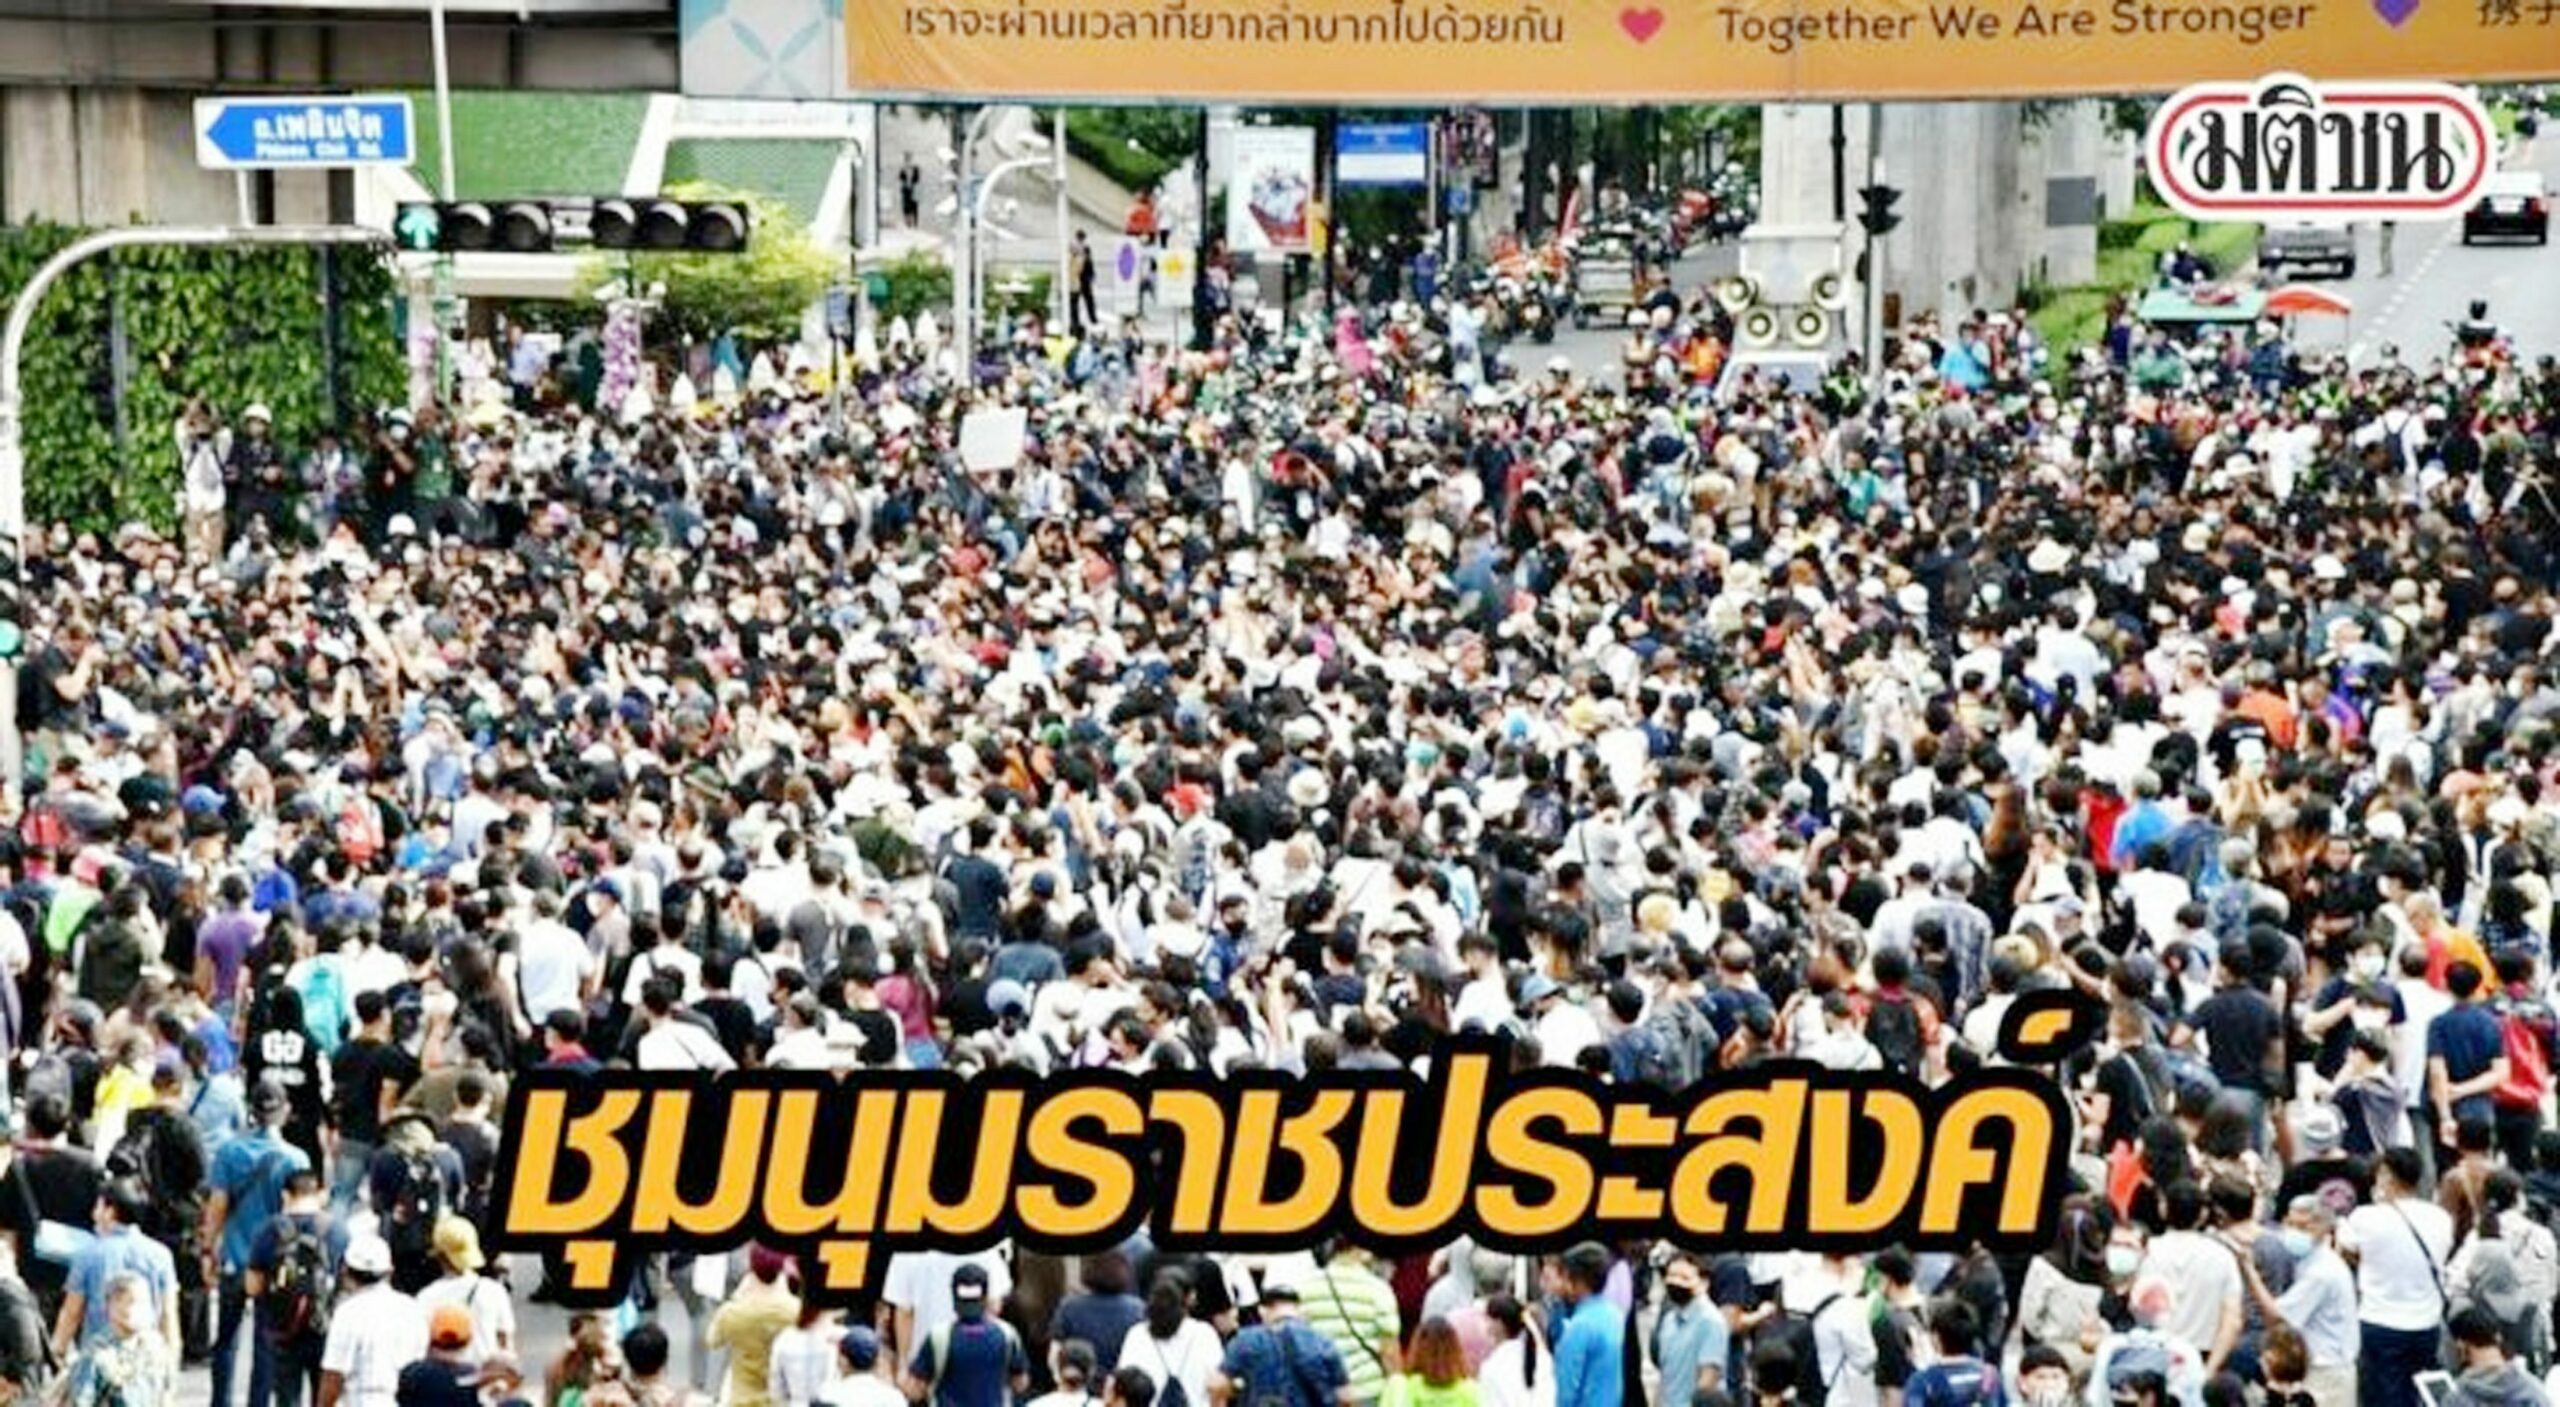 ข่าวเศรษฐกิจไทย สั้นๆ